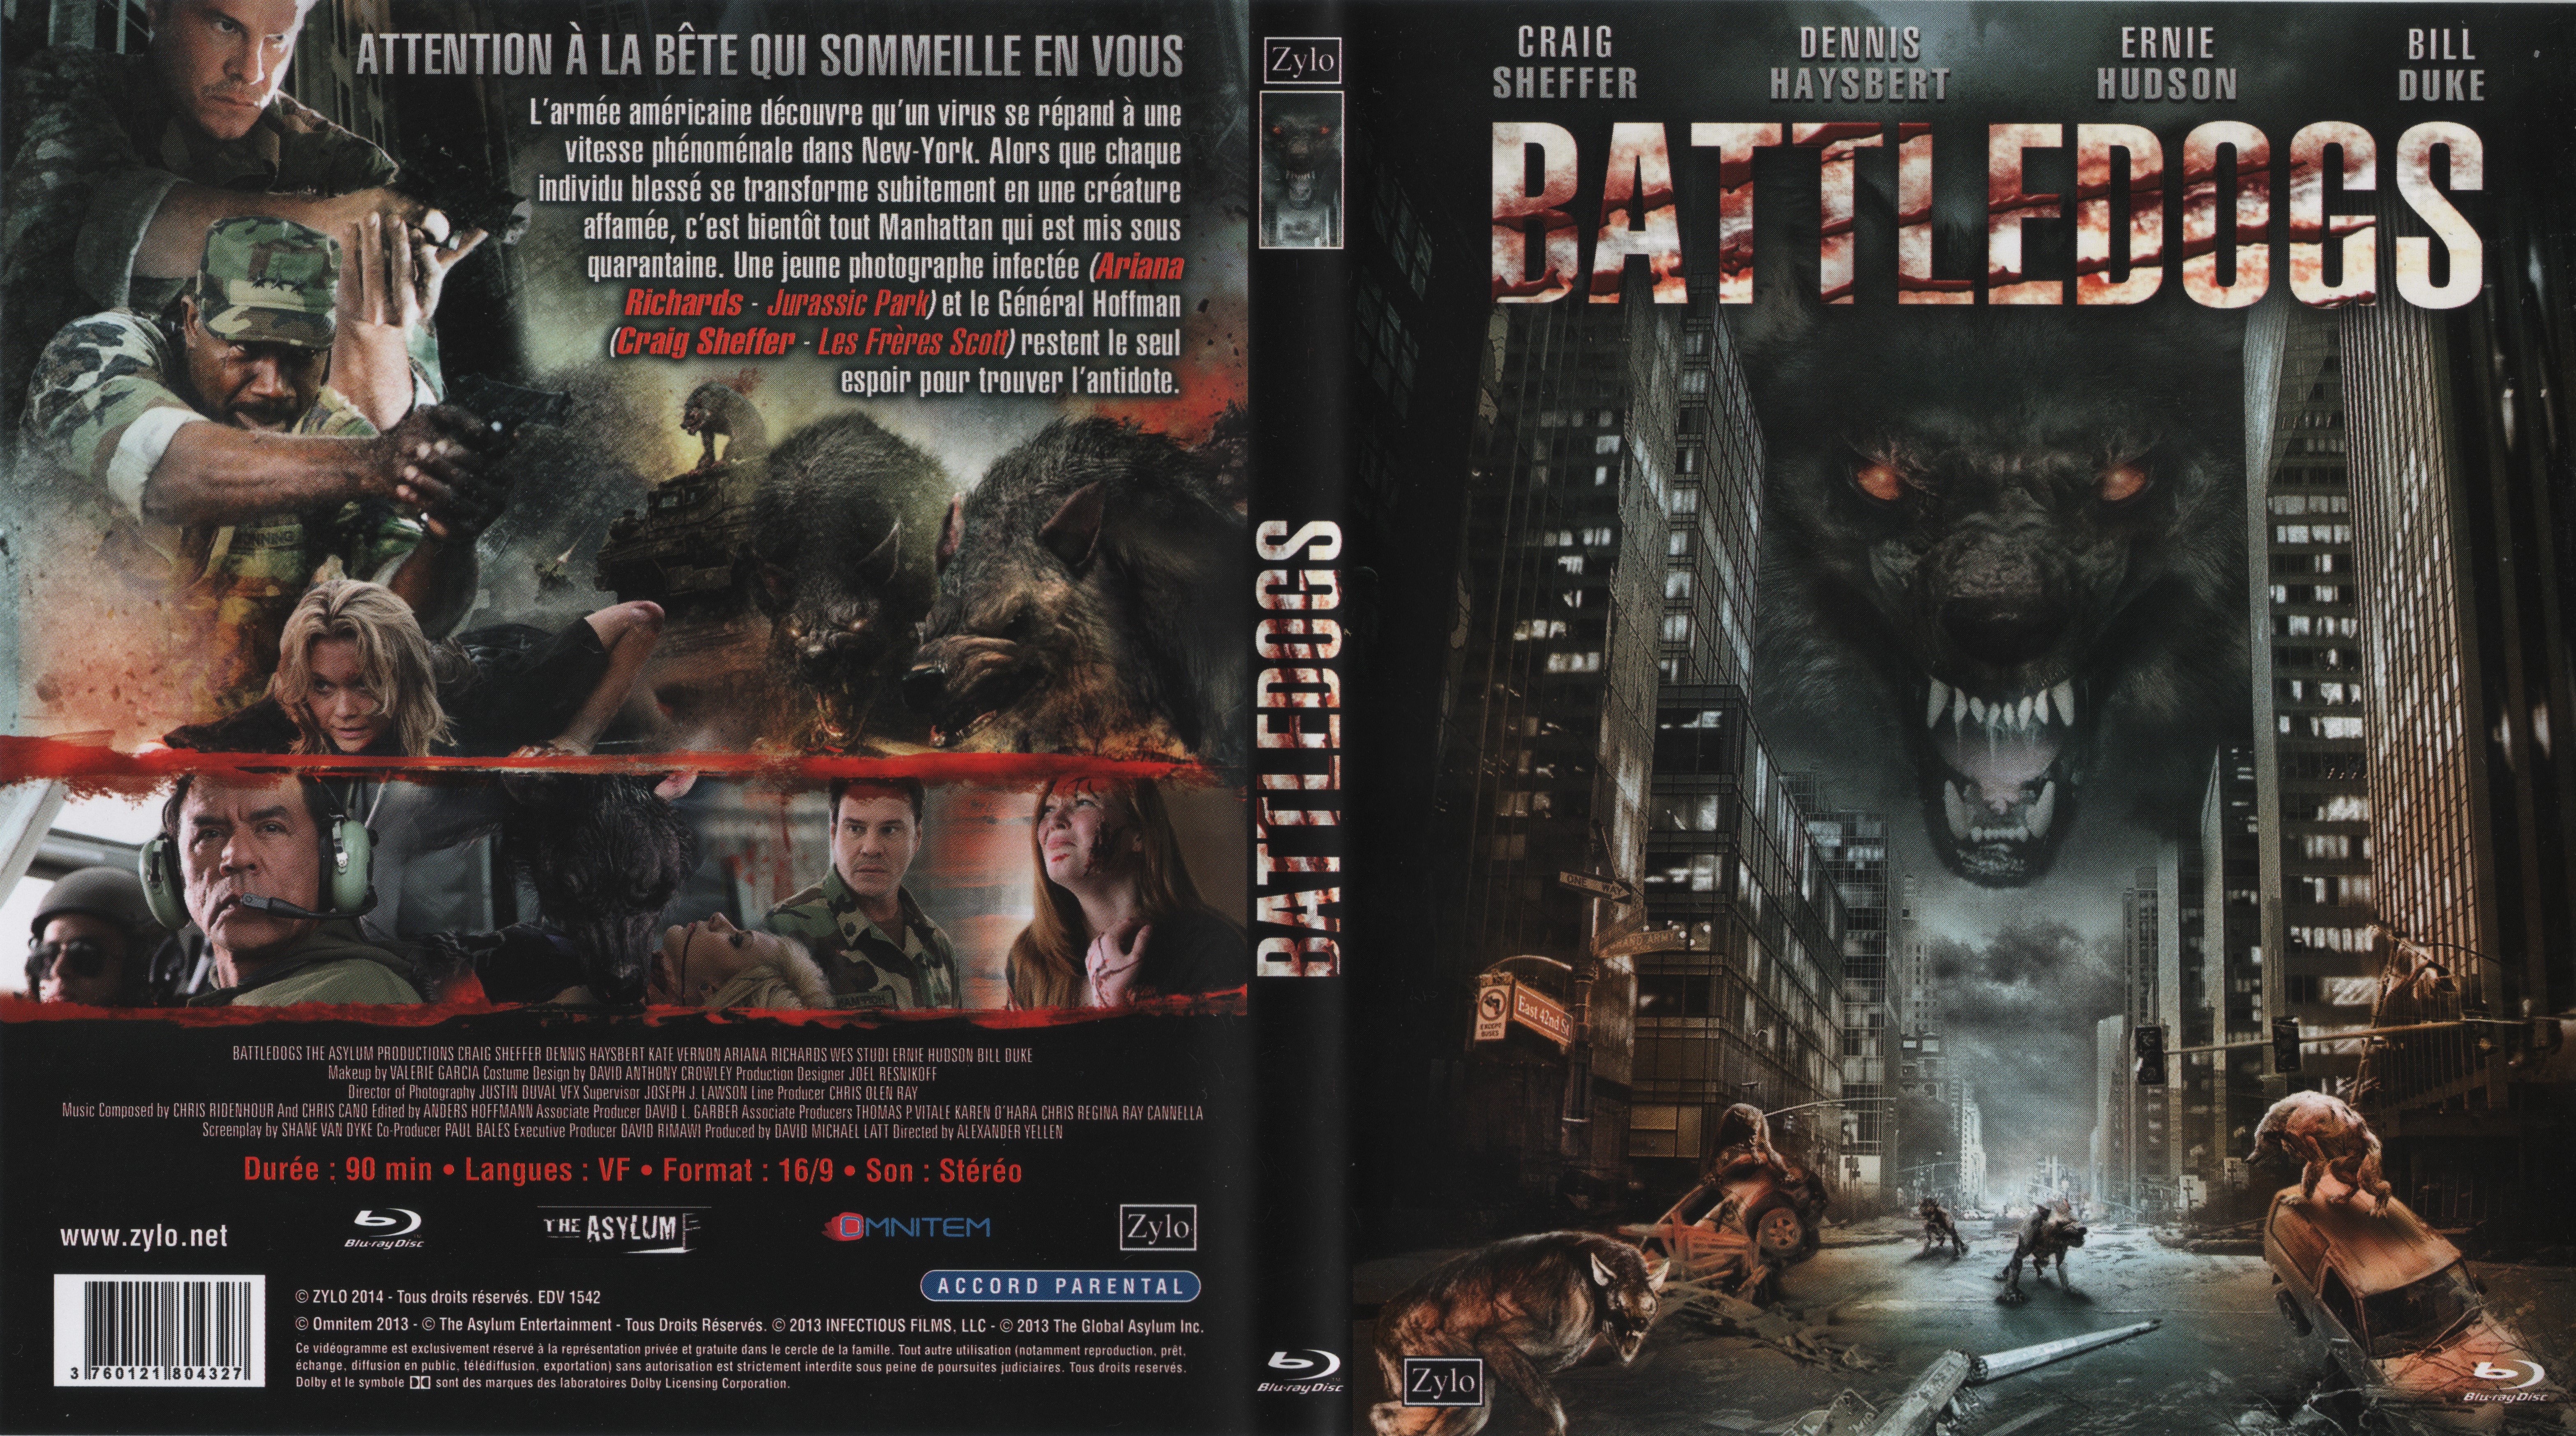 Jaquette DVD Battledogs